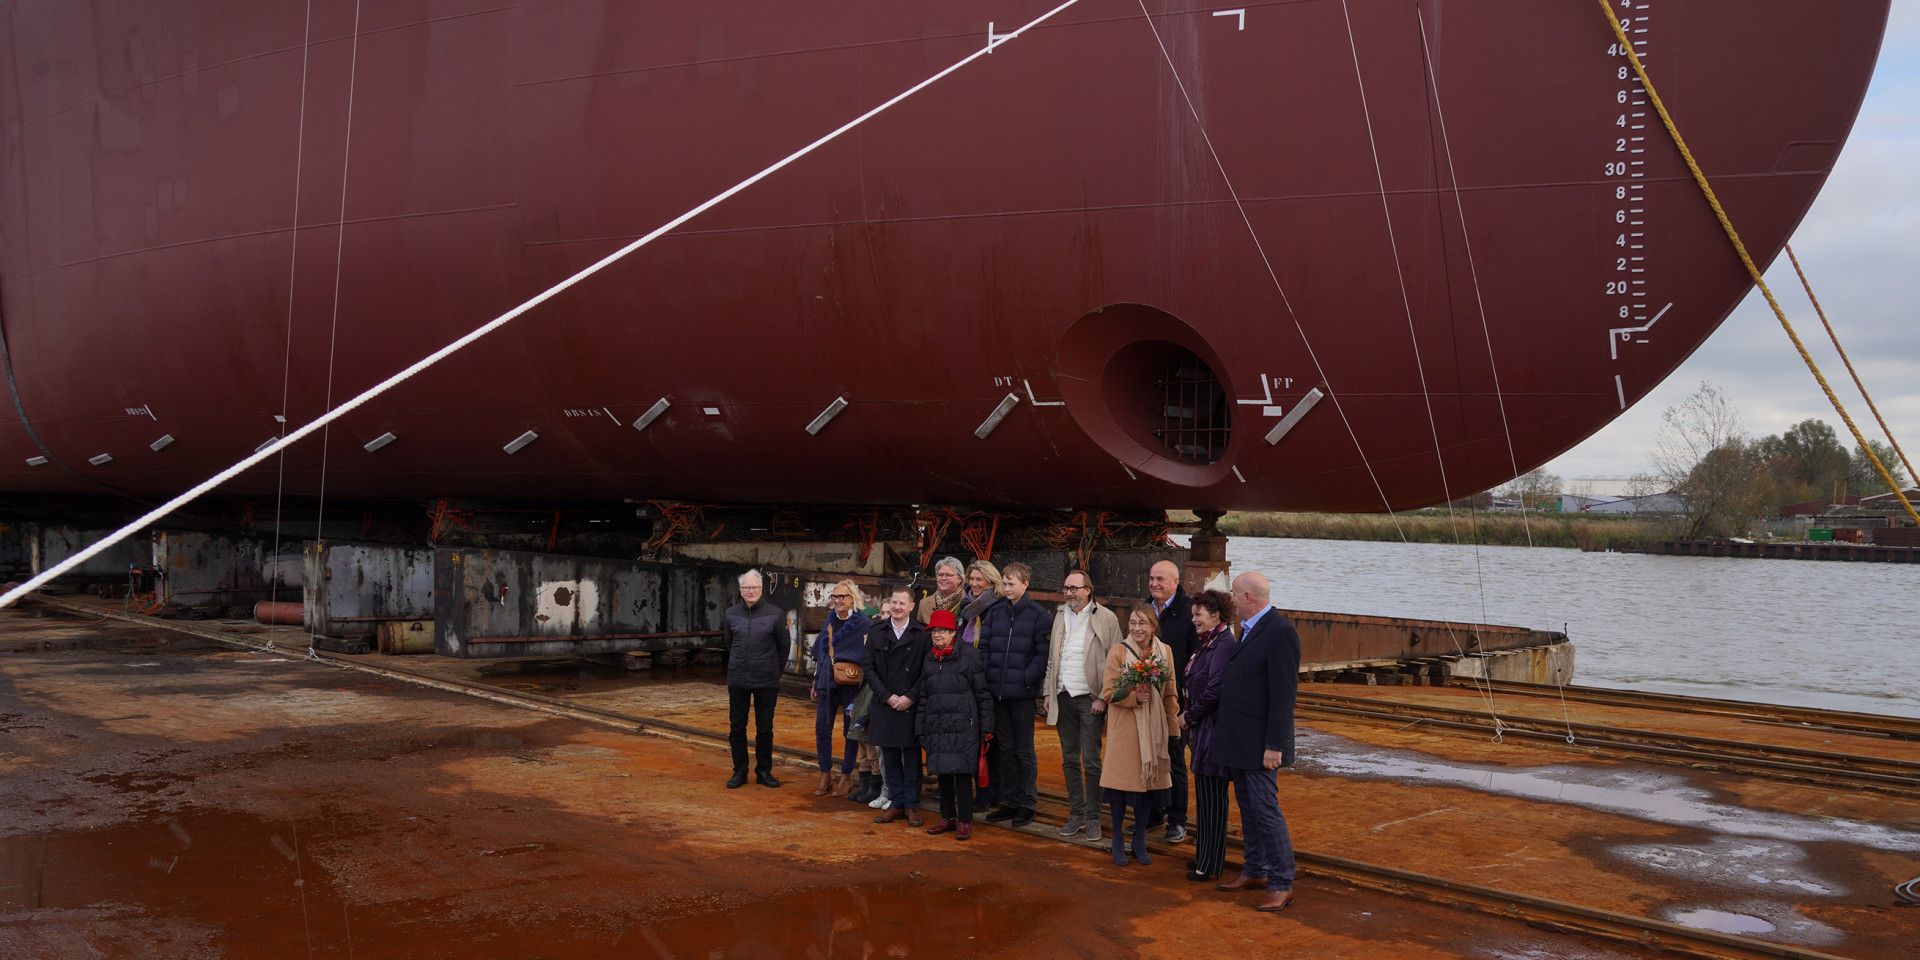 Nynas AB together with Erik Thun AB & MF Shipping Group